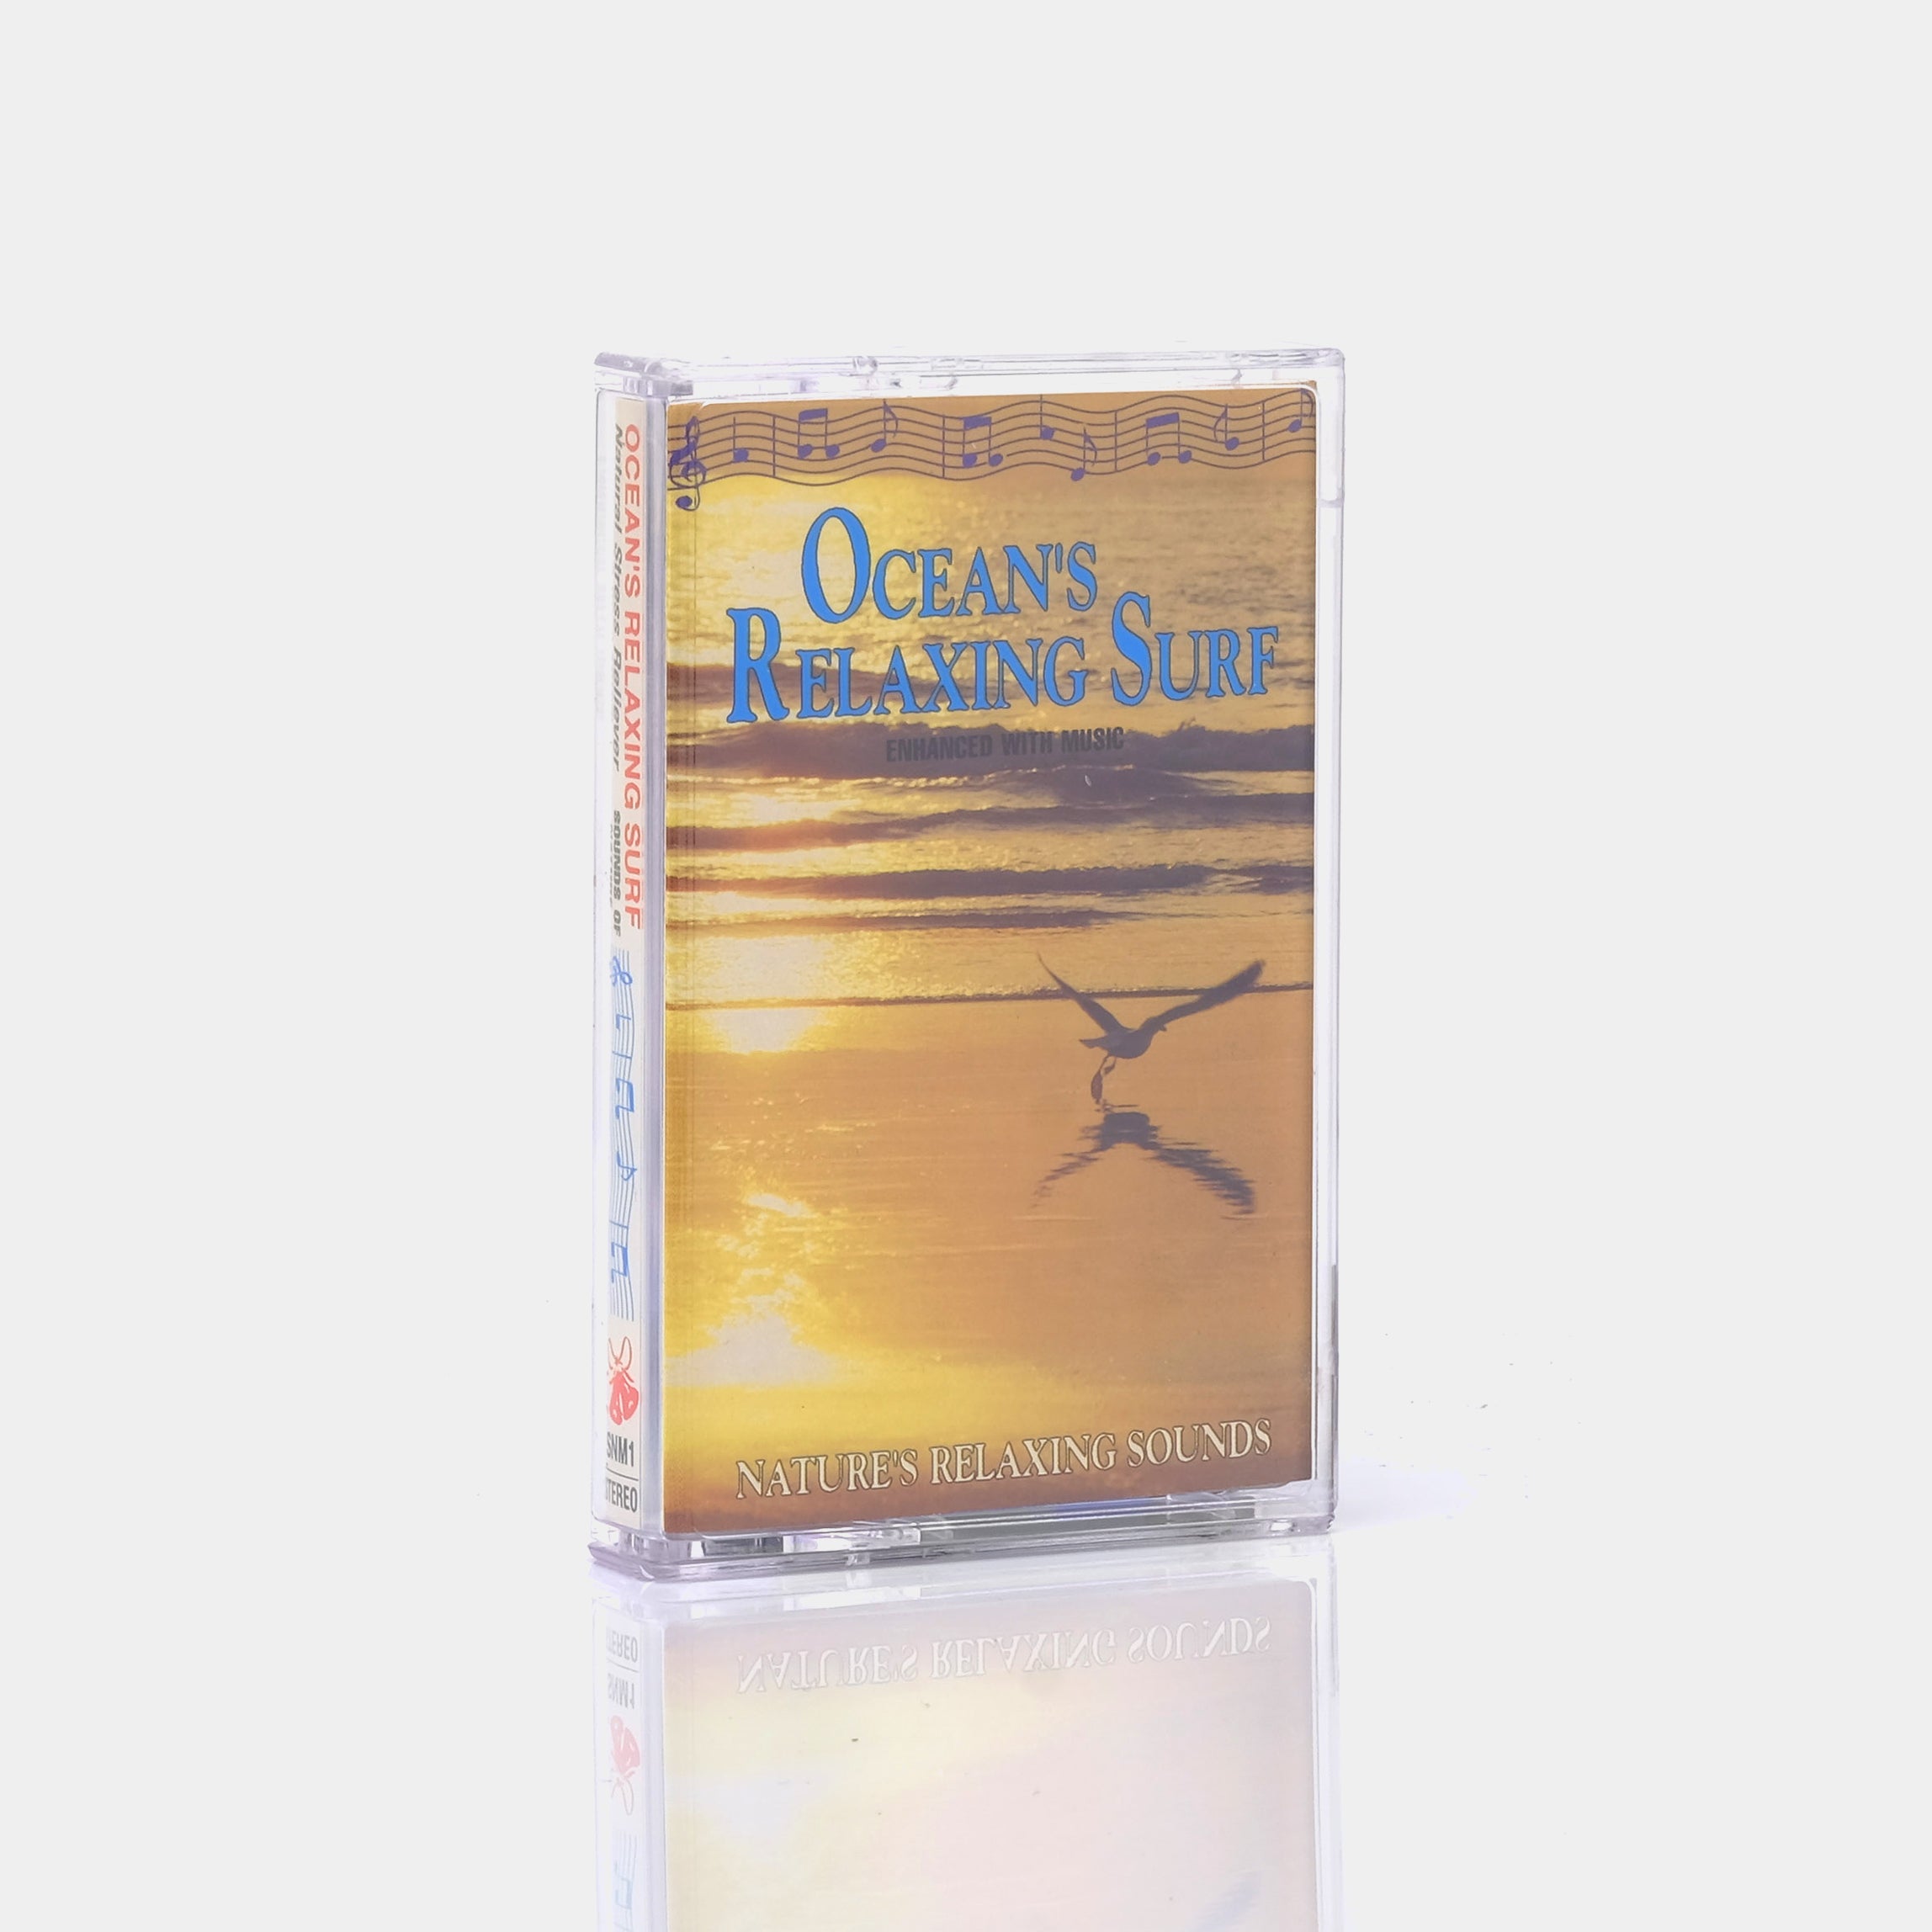 Ocean's Relaxing Surf Cassette Tape